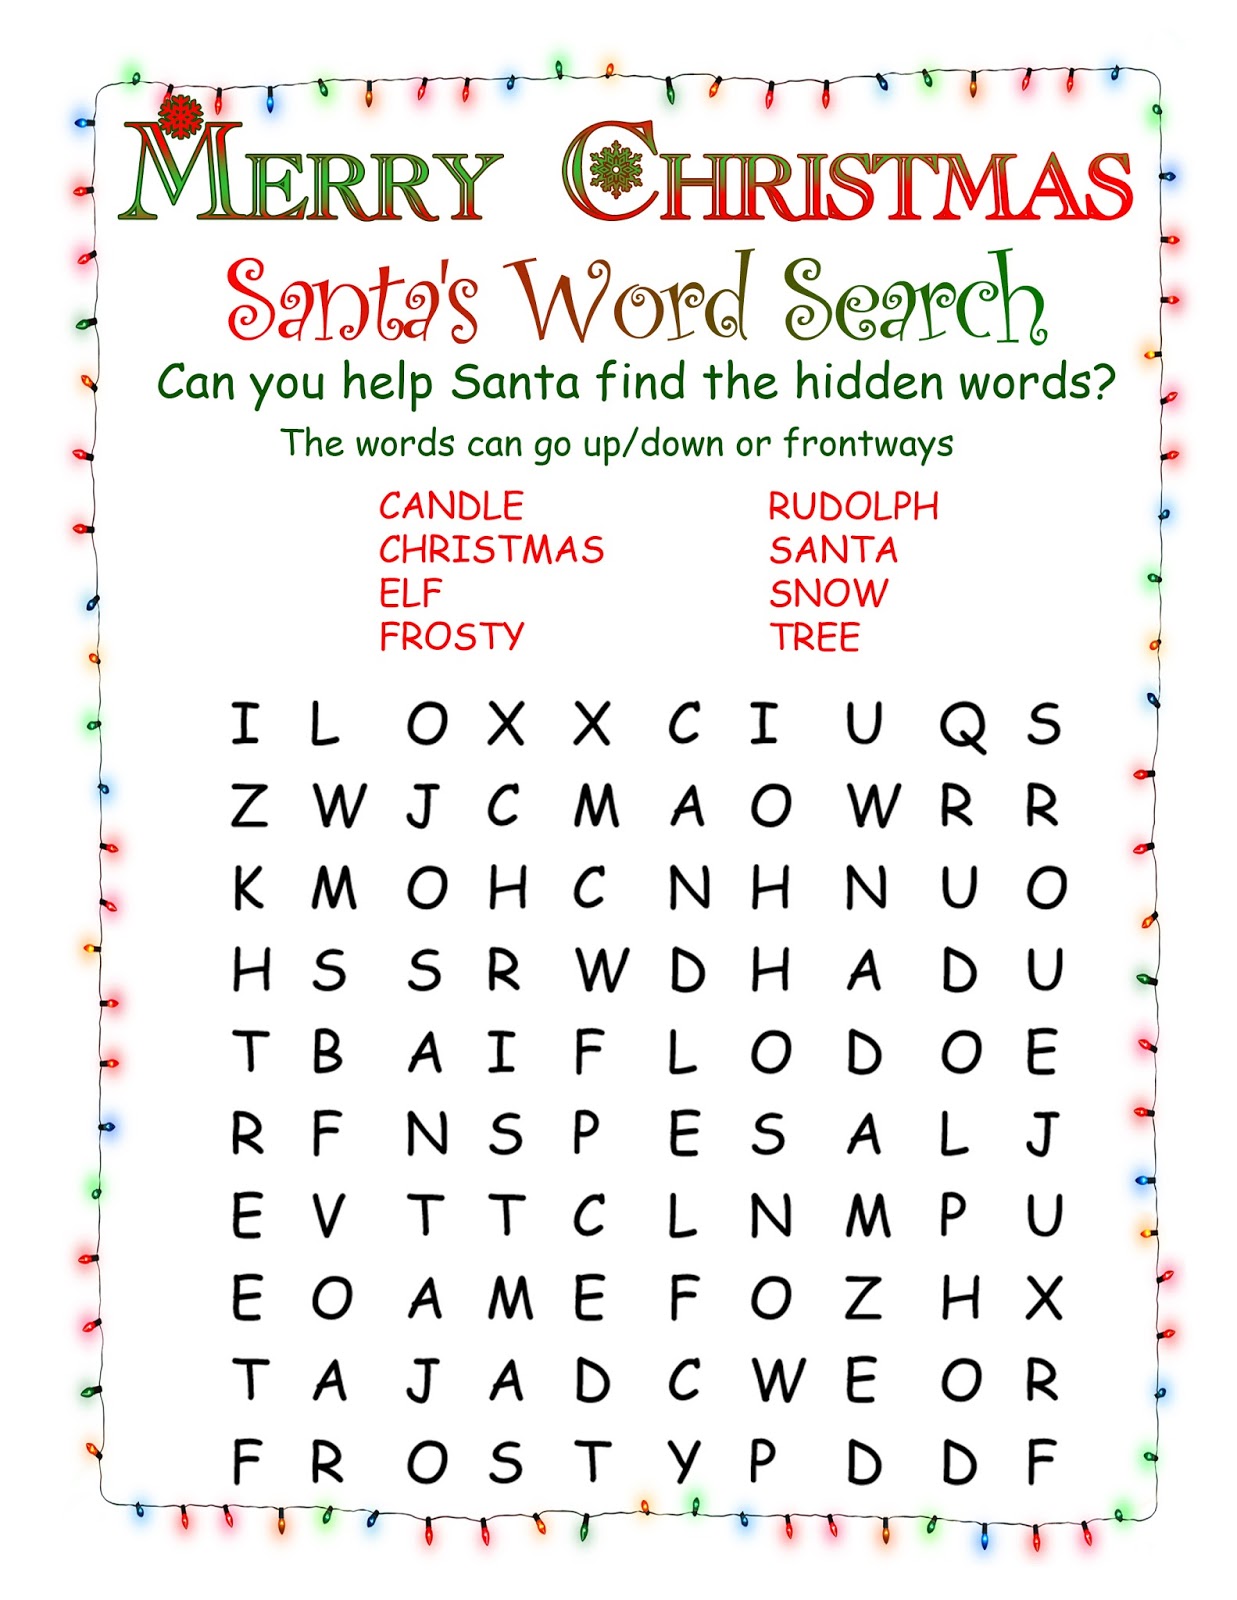 Free Christmas Word Search Printable